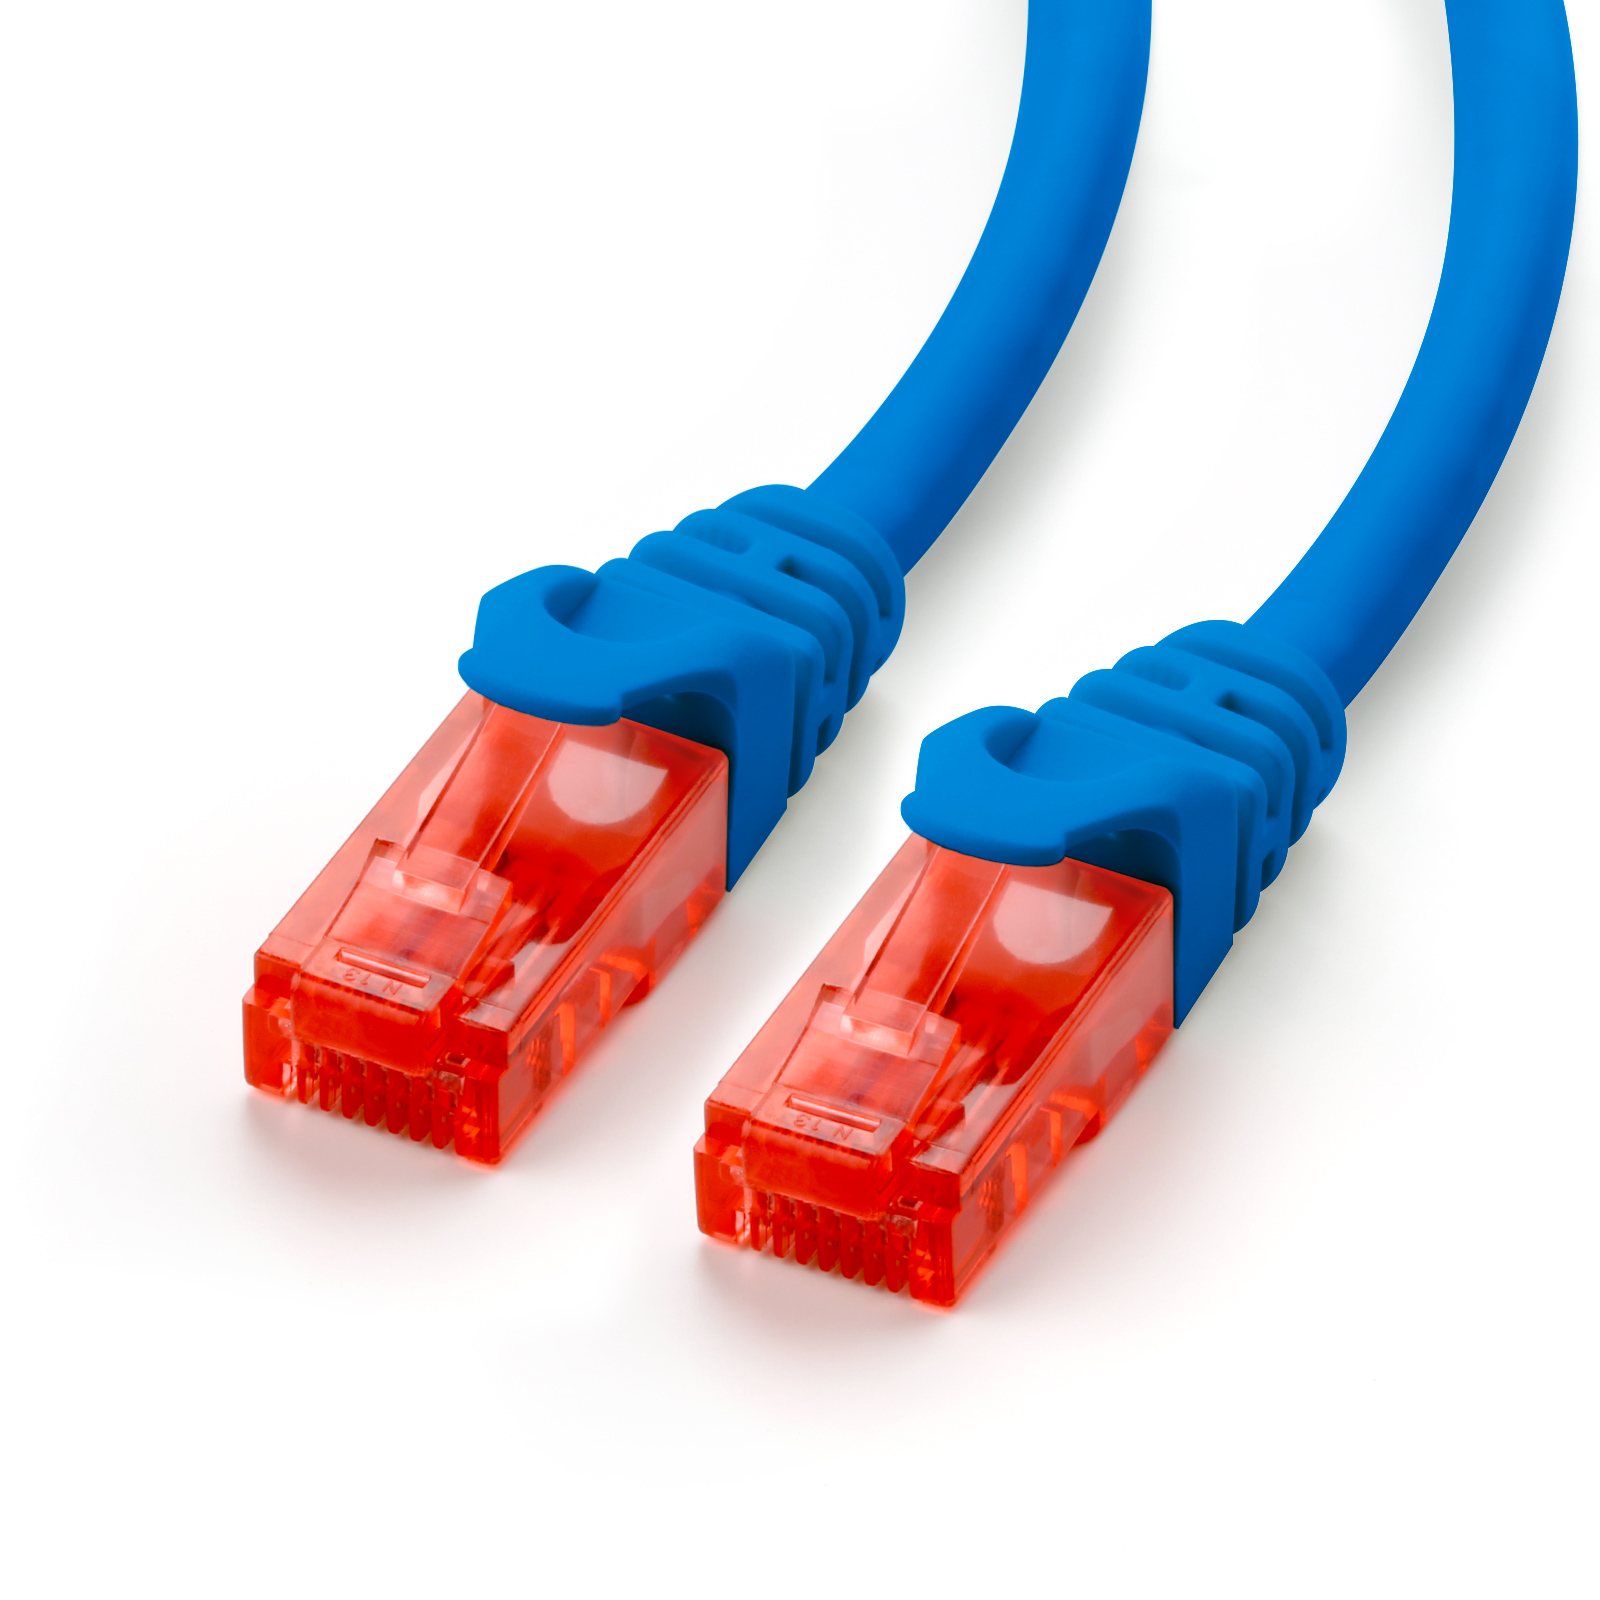 CSL 0,5m Patchkabel, Cat6 LAN Kabel, blau